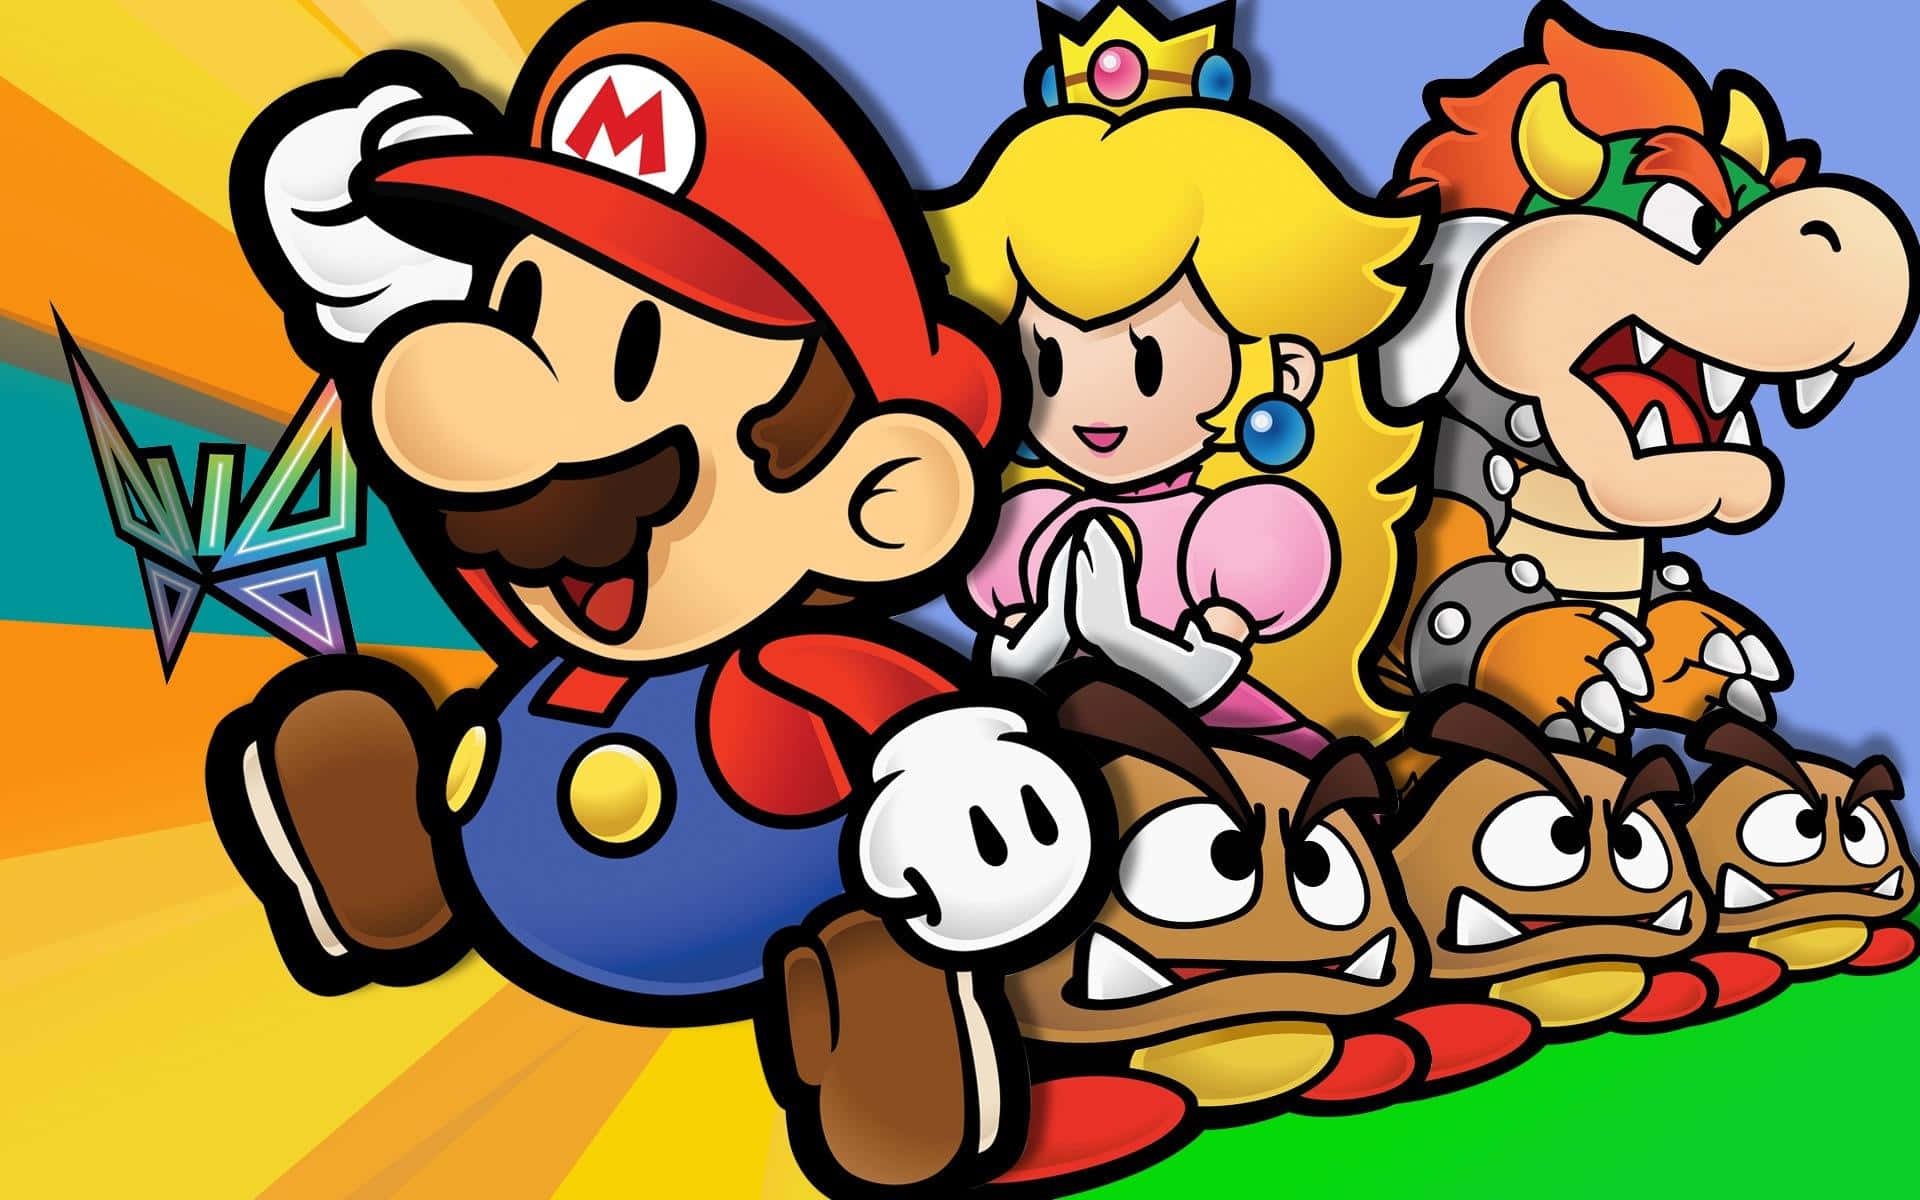 Personajesde Super Mario Se Unen Fondo de pantalla